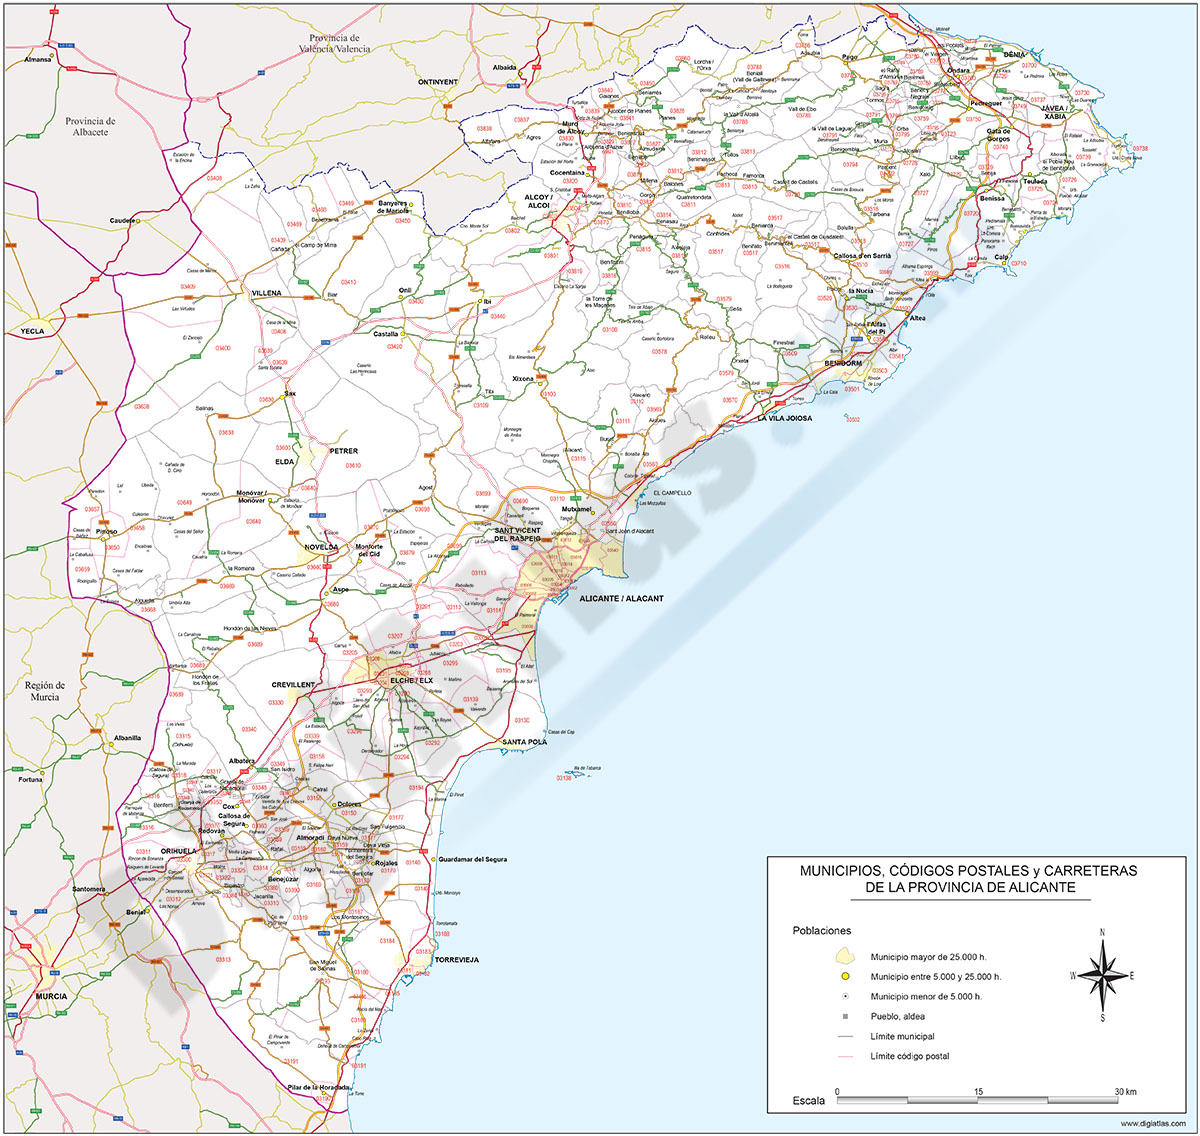 Alicante - mapa provincial con municipios, Códigos Postales y carreteras